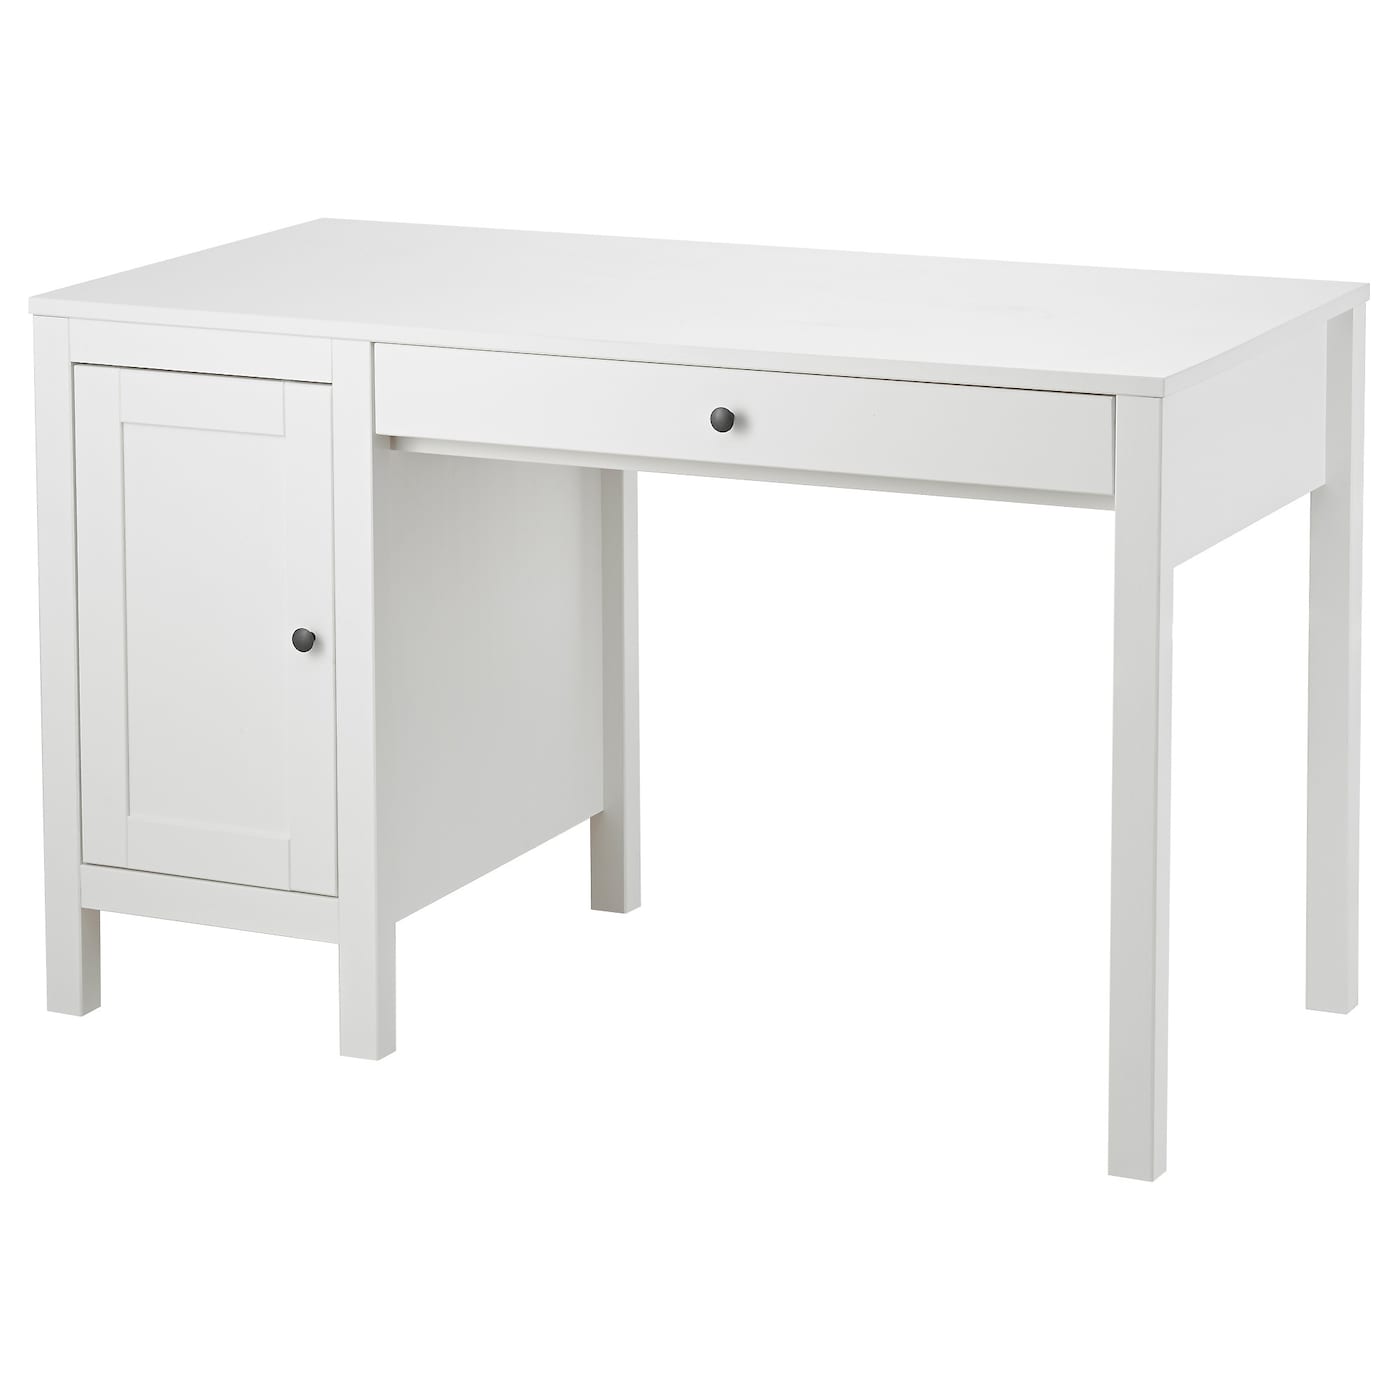 Письменный стол с ящиками - IKEA HEMNES/ ХЕМНЭС ИКЕА, 120х55 см, белый